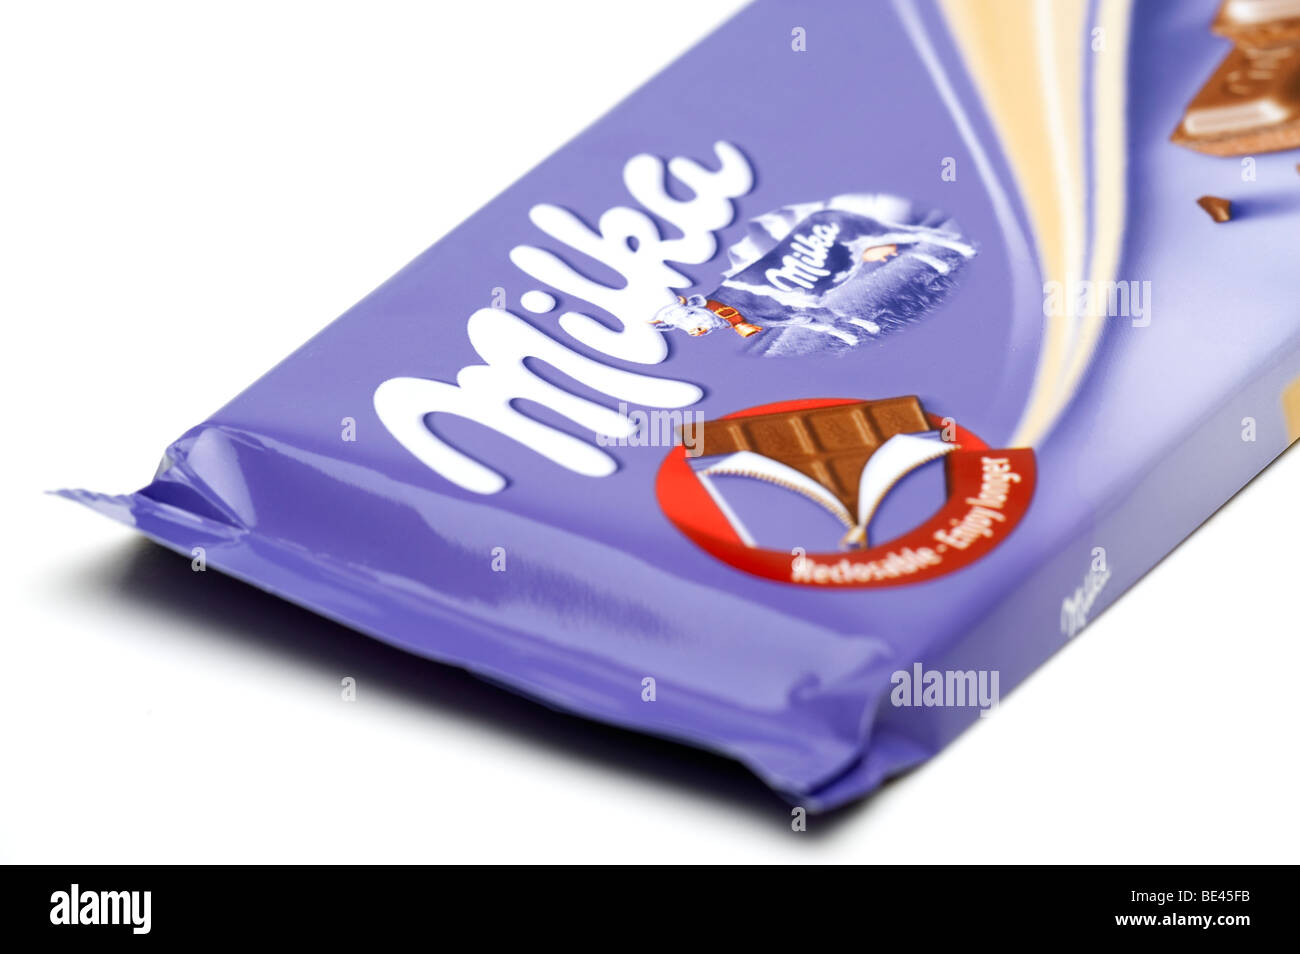 Milka chocolate bar immagini e fotografie stock ad alta risoluzione - Alamy